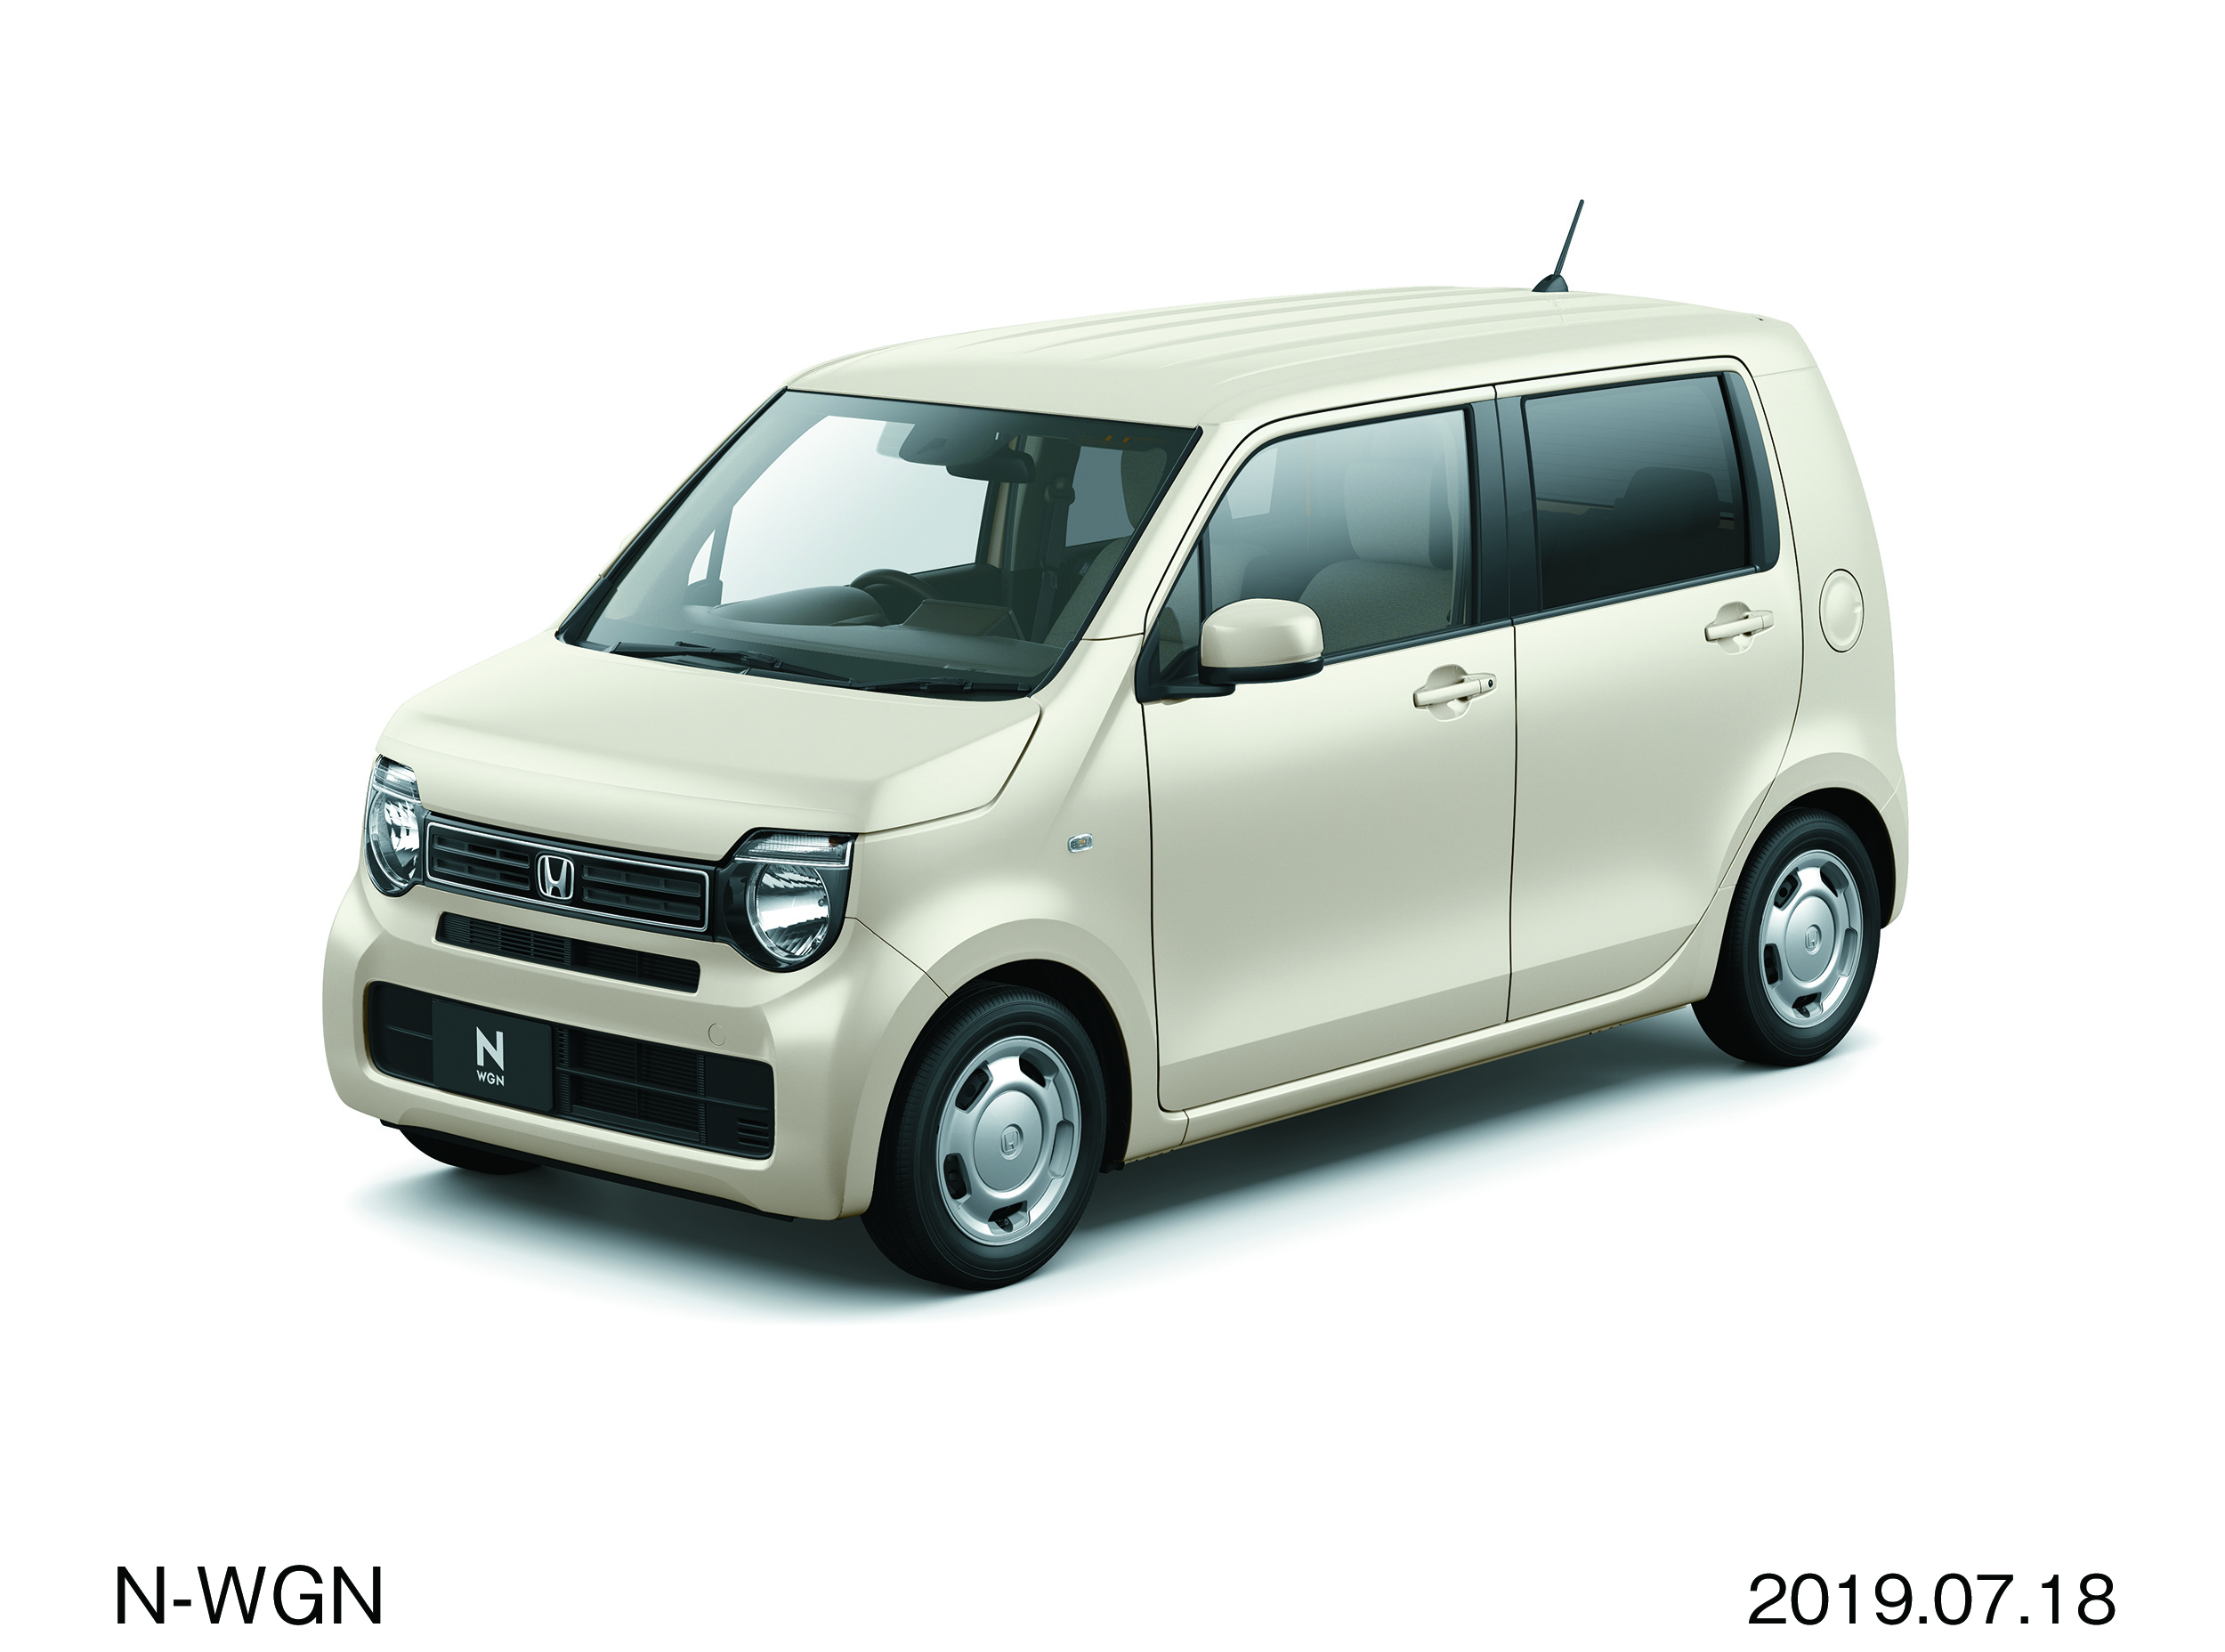 News Honda Releases Retro Stepvan Inspired N Wgn Japanese Nostalgic Car